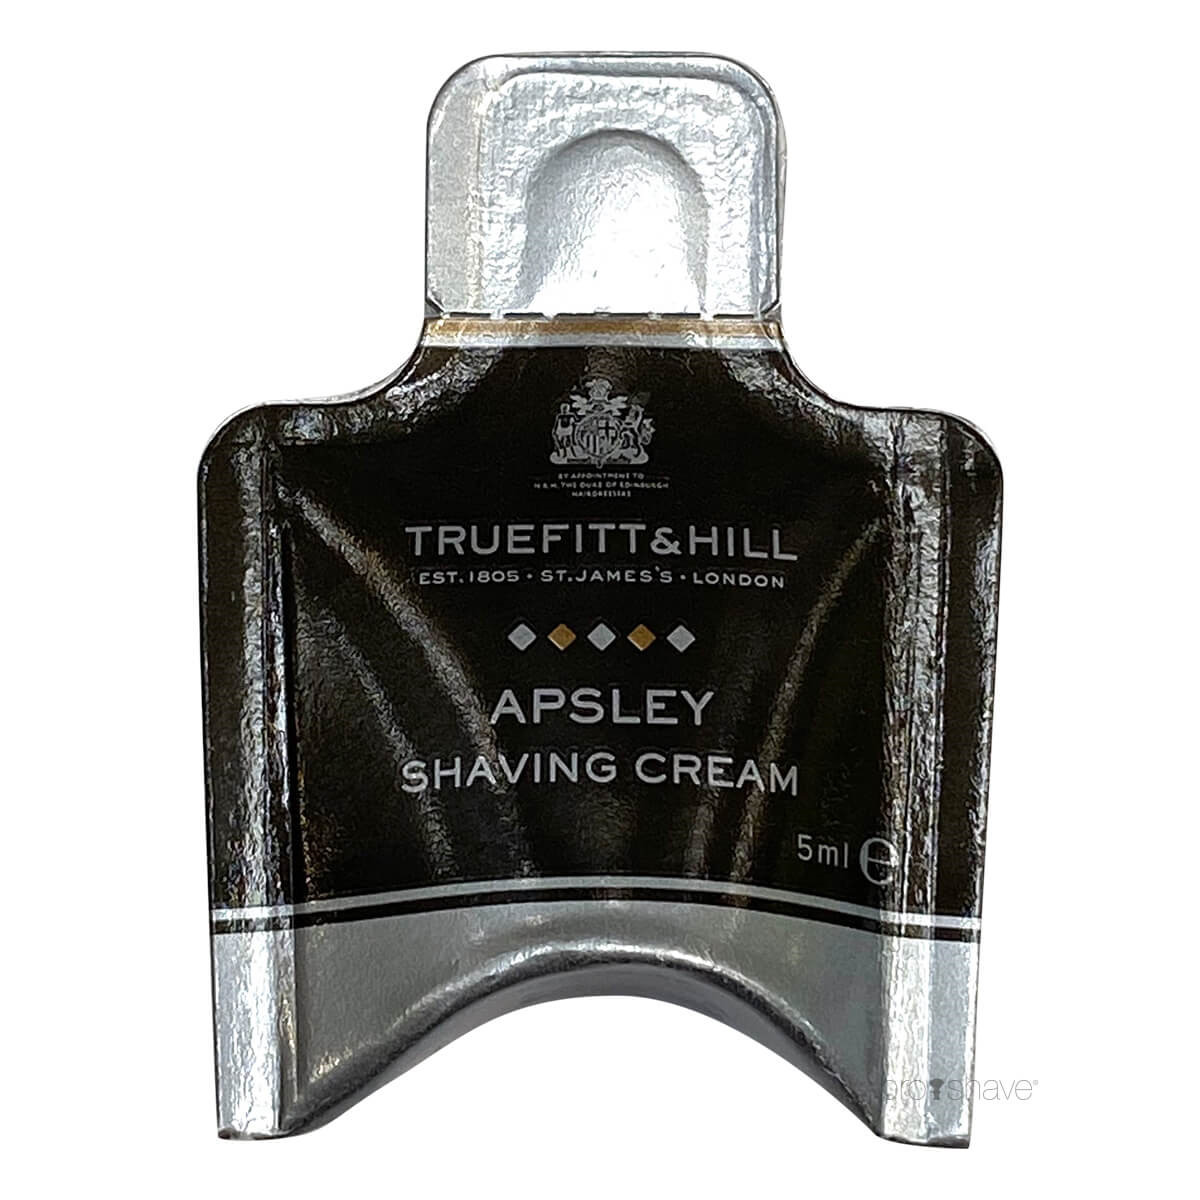 13: Truefitt & Hill Apsley Shaving Cream Sample Pack, 5 ml.